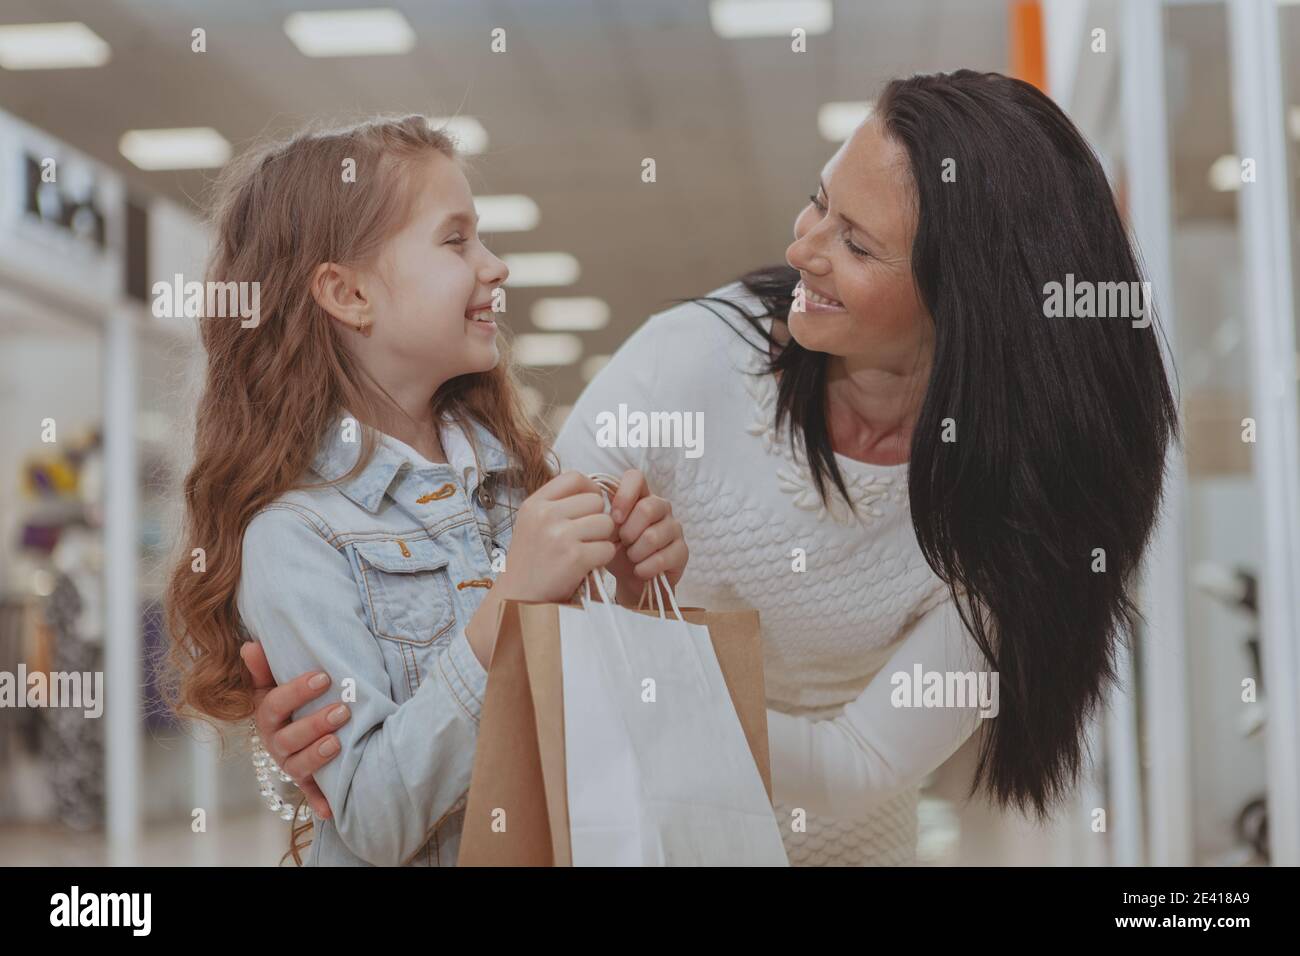 Bonne mère et fille souriant l'une à l'autre, en appréciant le shopping au centre commercial. Belle femme mûre embrassant sa fille, tout en faisant du shopping Banque D'Images